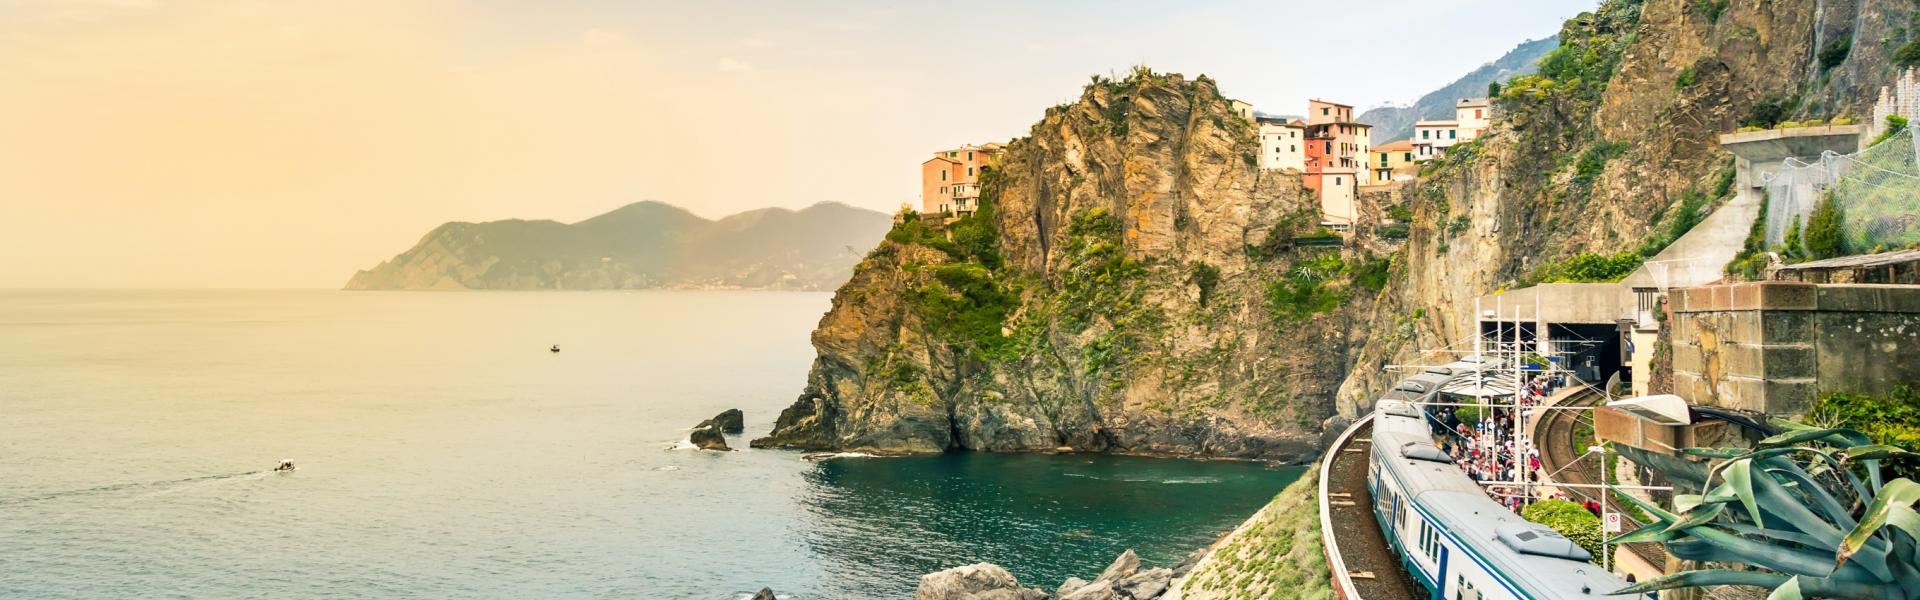 Ferienwohnungen & Ferienhäuser für Urlaub in La Spezia Provinz - Casamundo